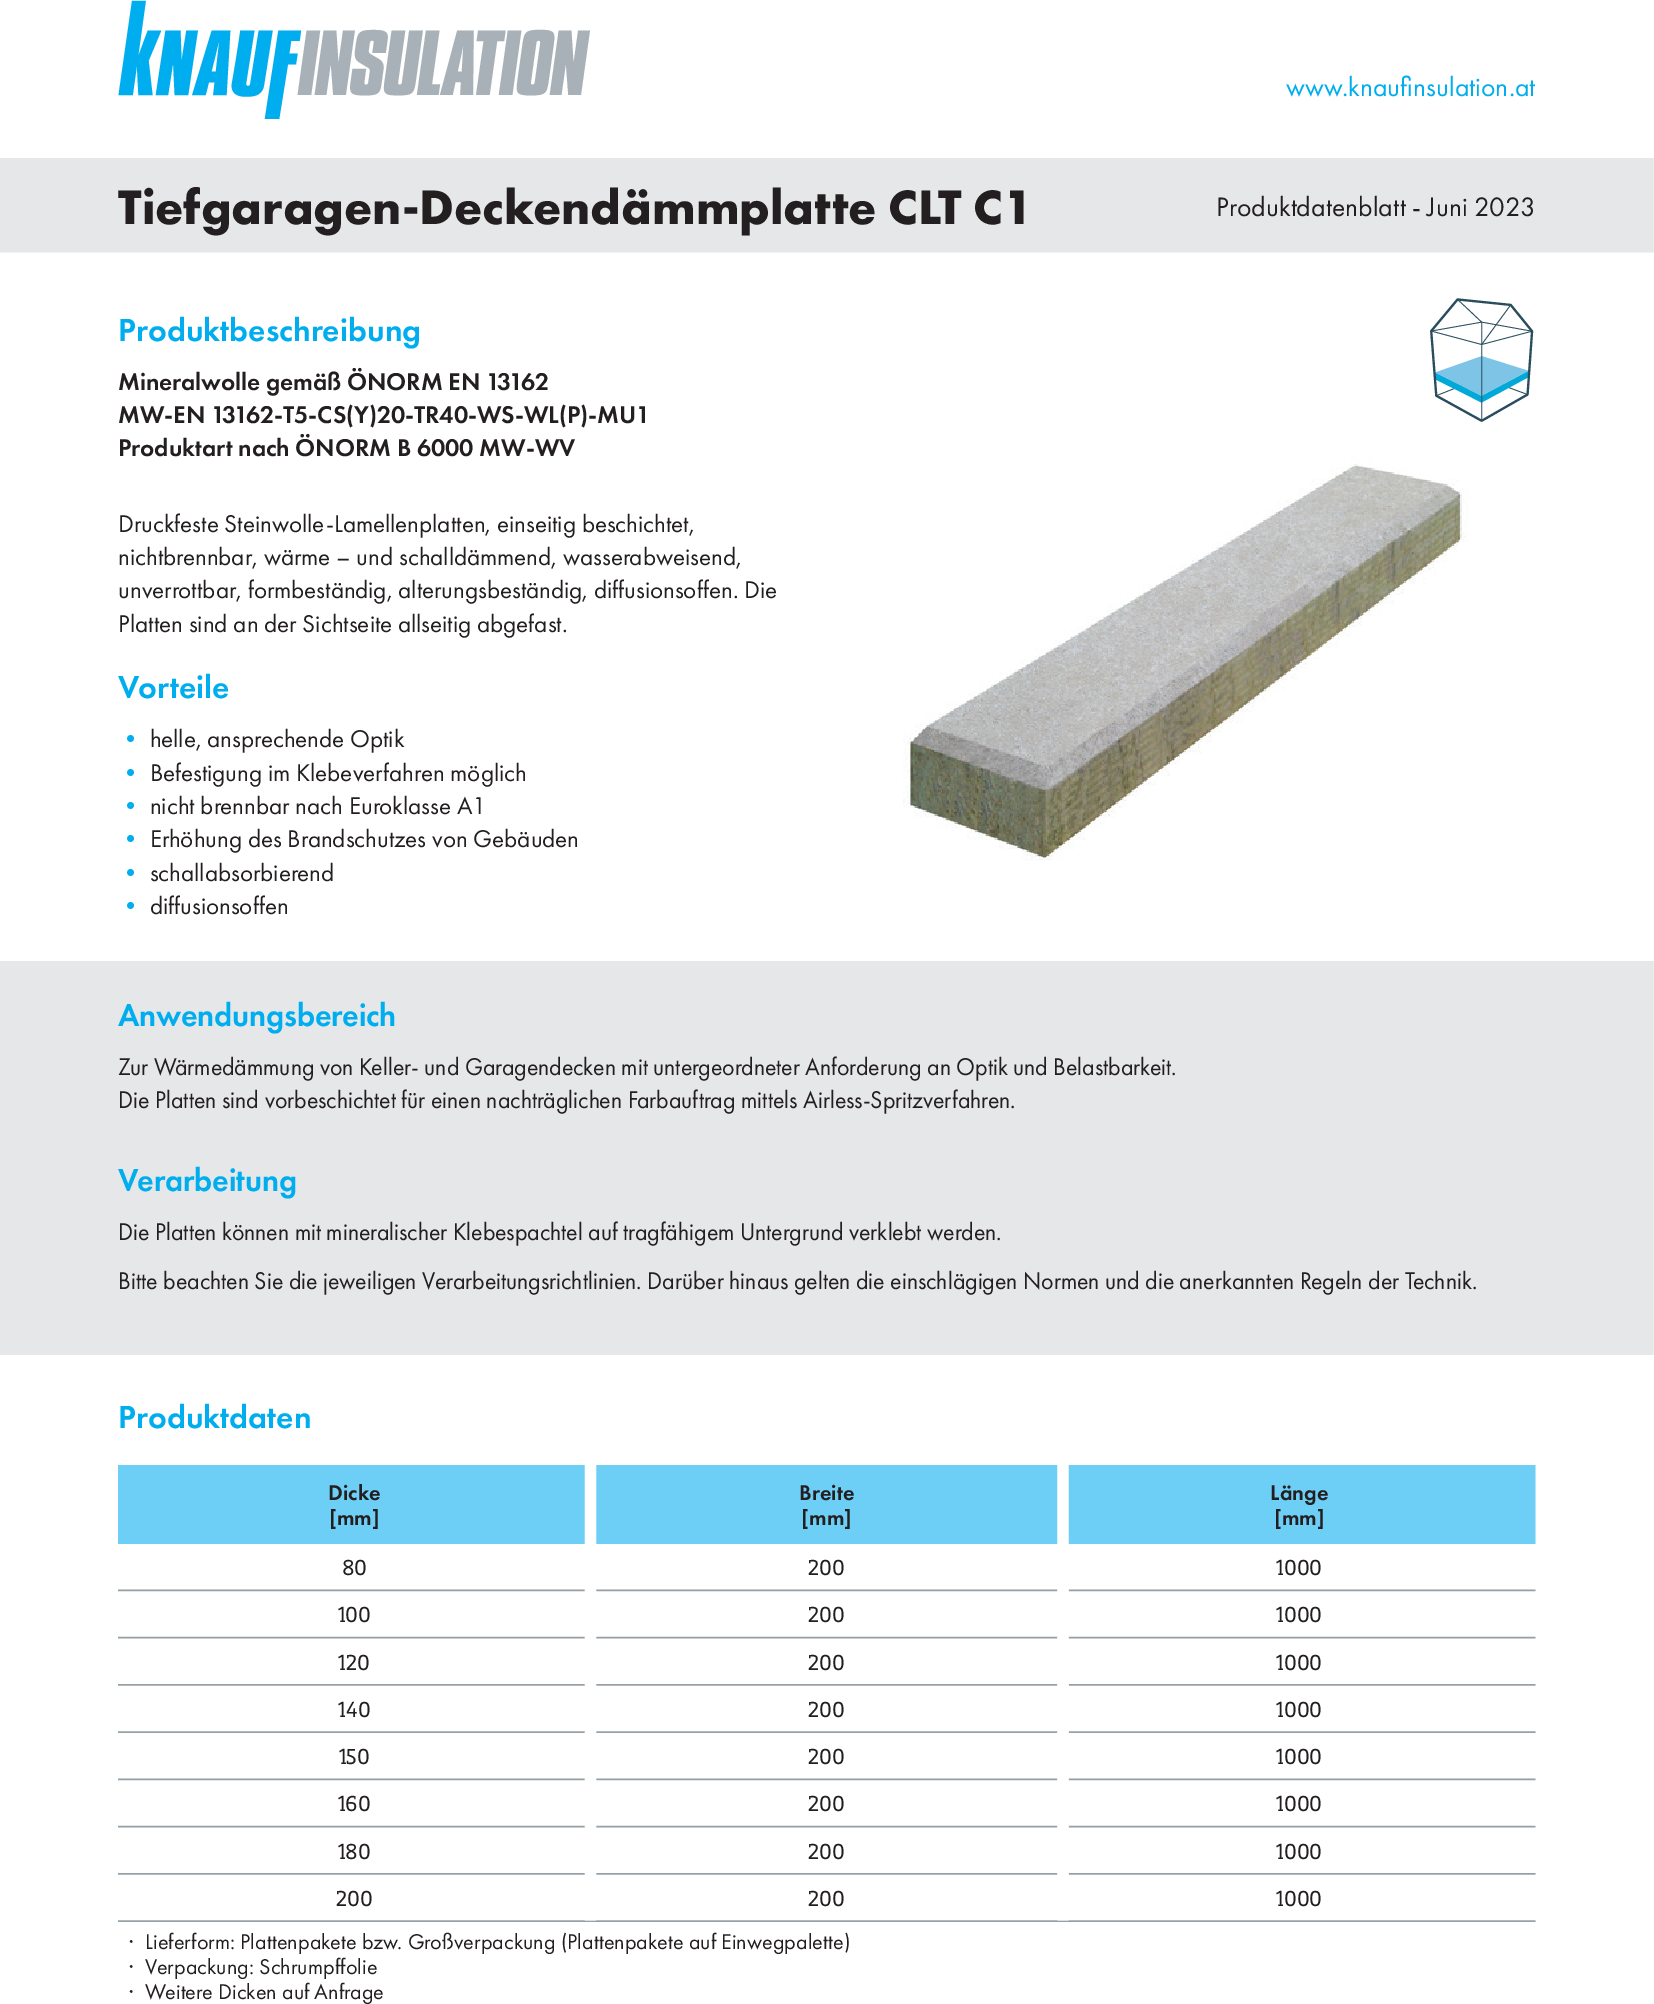 Tiefgaragen-Deckendämmplatte CLT C1, Produktdatenblatt